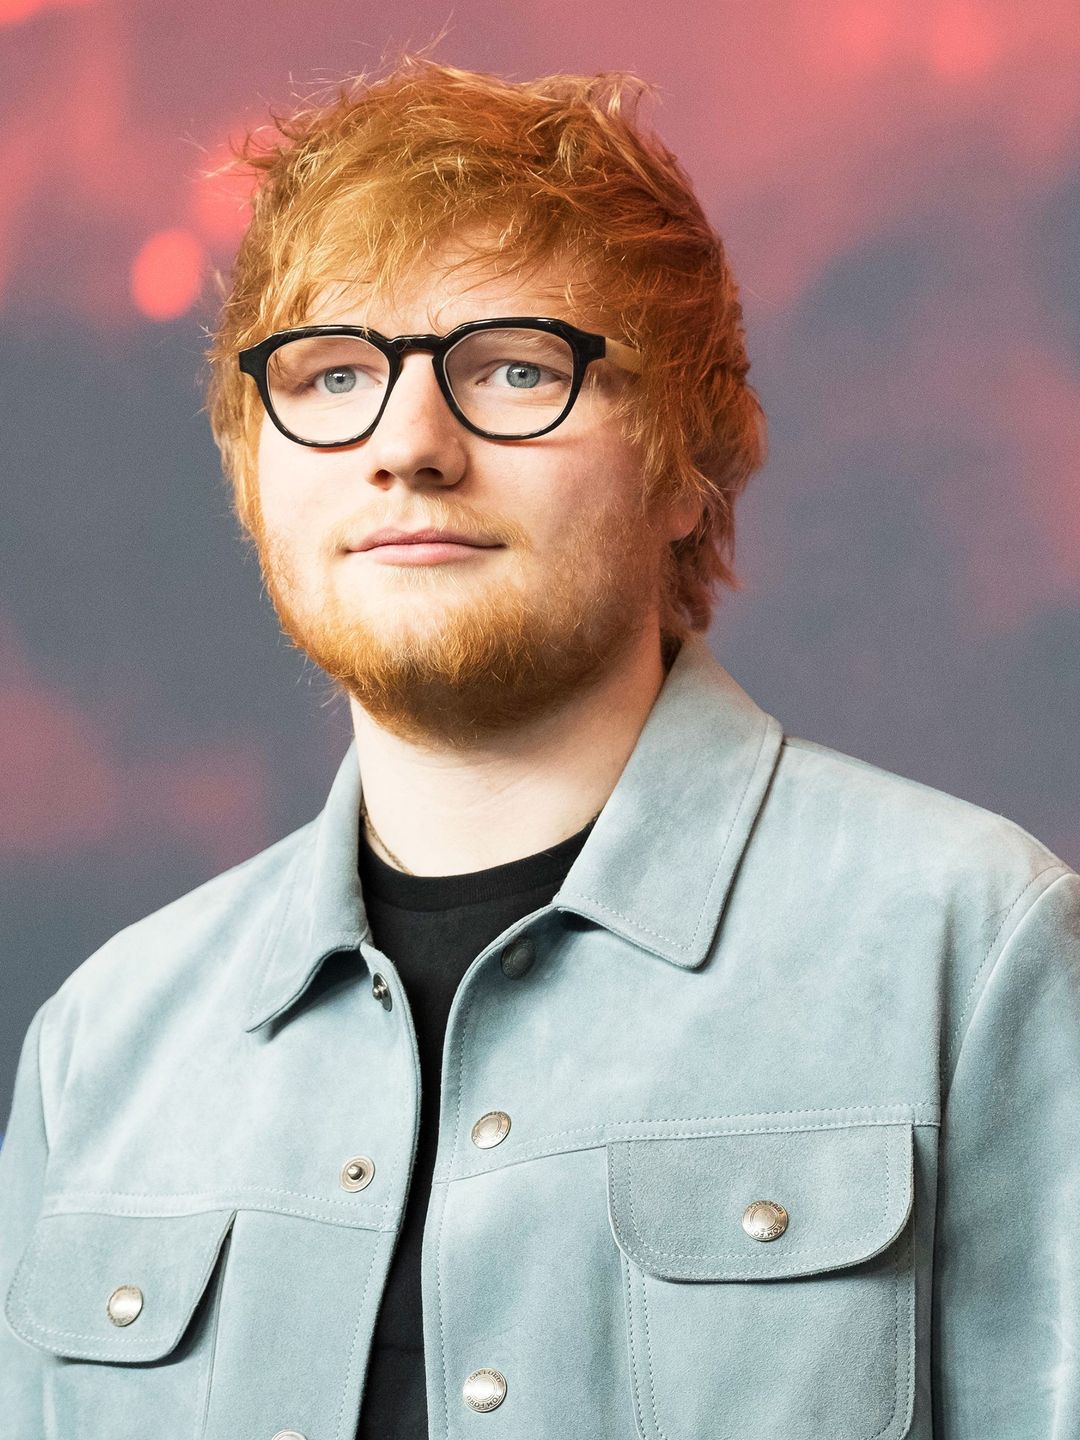 Ed Sheeran where did he study